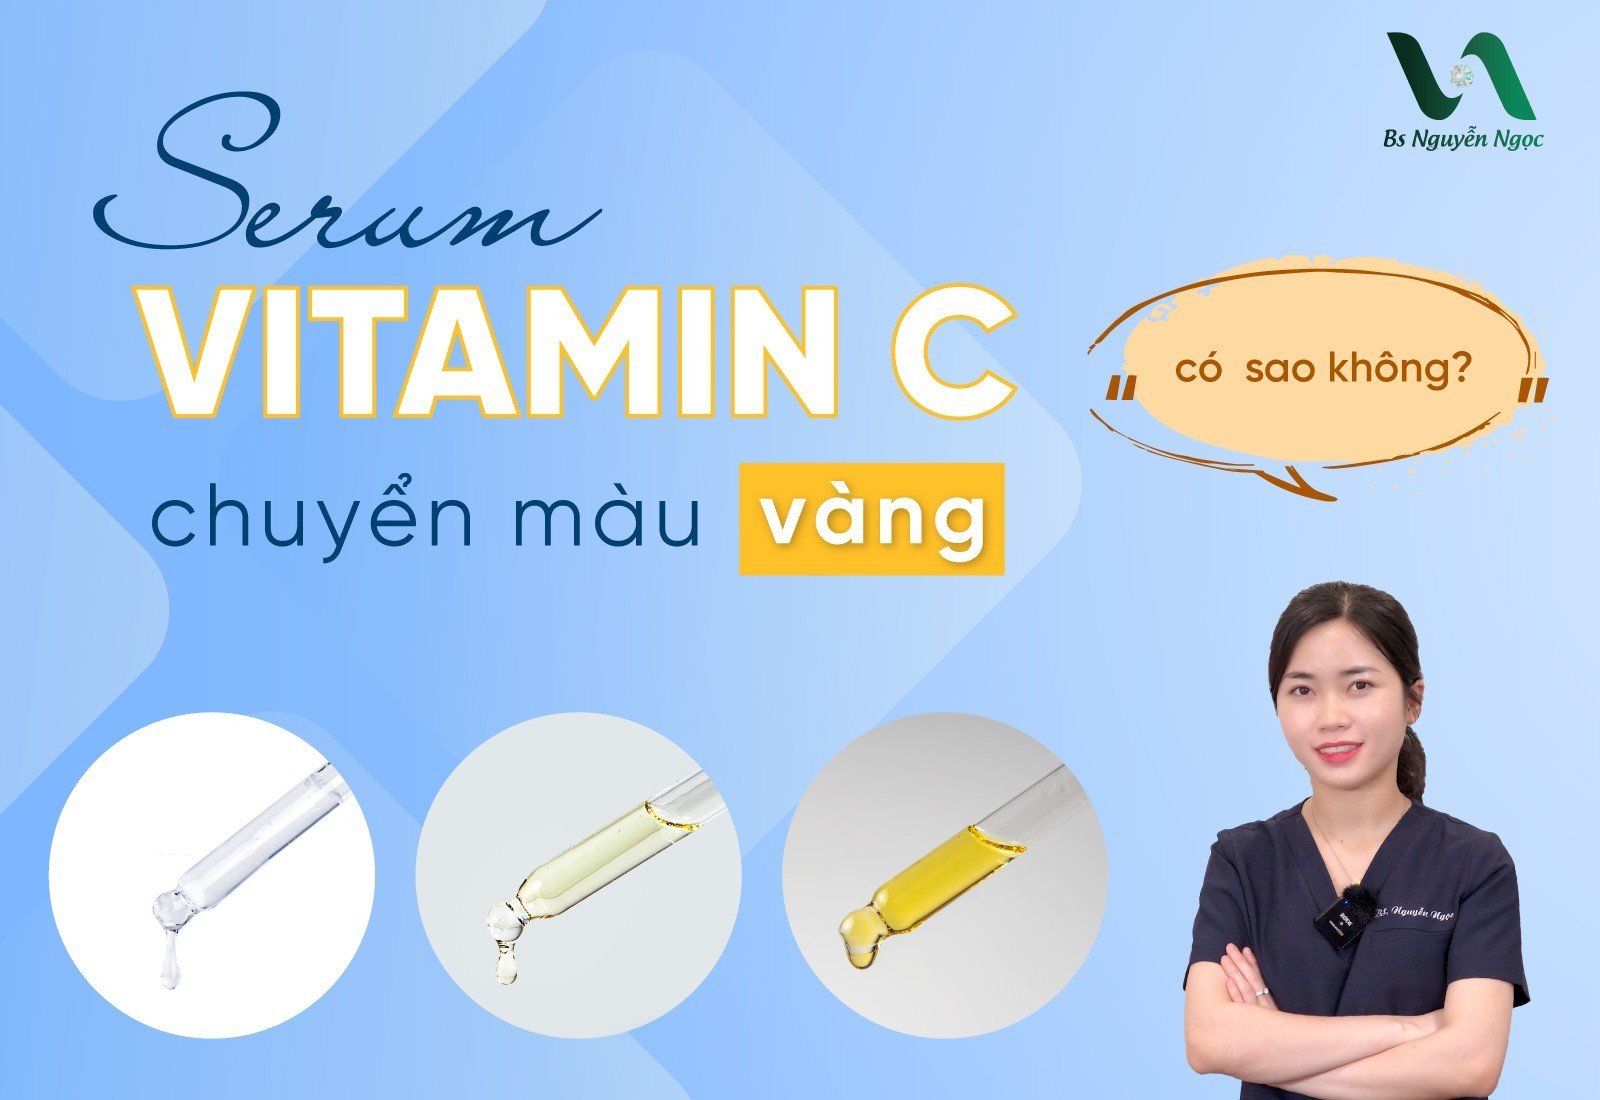 Serum Vitamin C chuyển màu vàng có sao không?